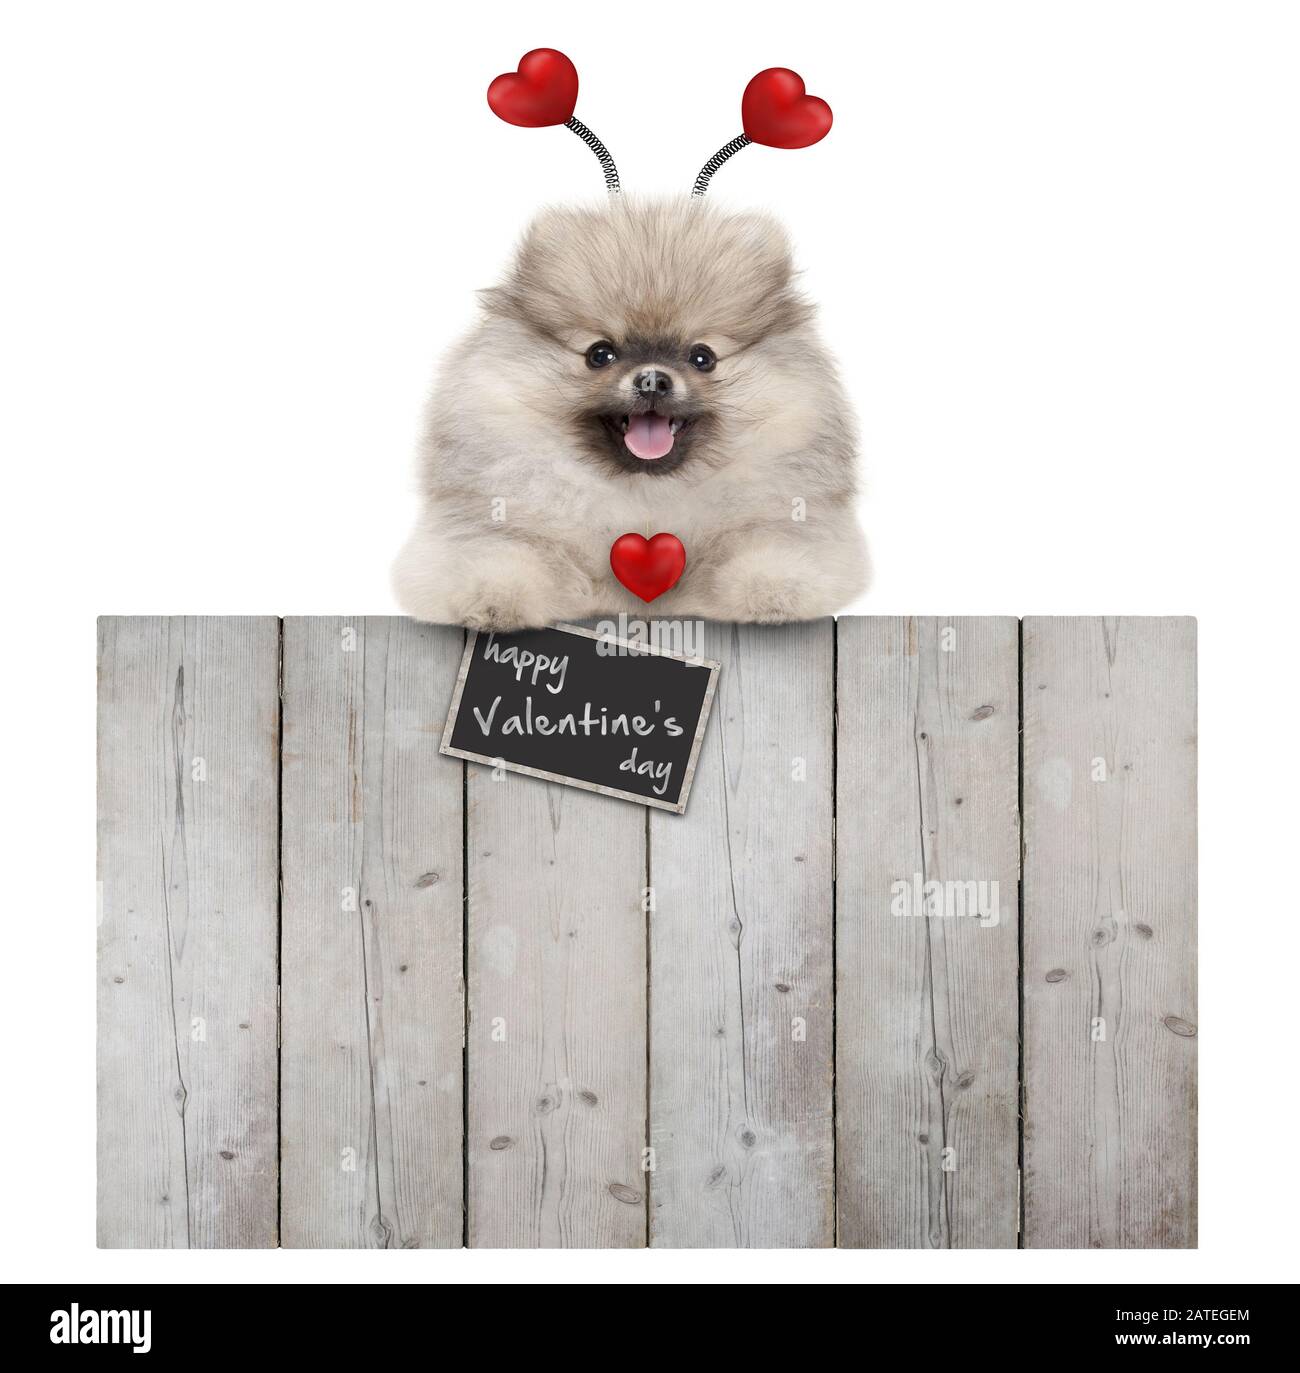 joli chien pomeranian spitz pug souriant avec des coeurs rouges et signe heureux valentine's day, accroché avec des pattes sur la clôture en bois, isolé sur le dos blanc Banque D'Images